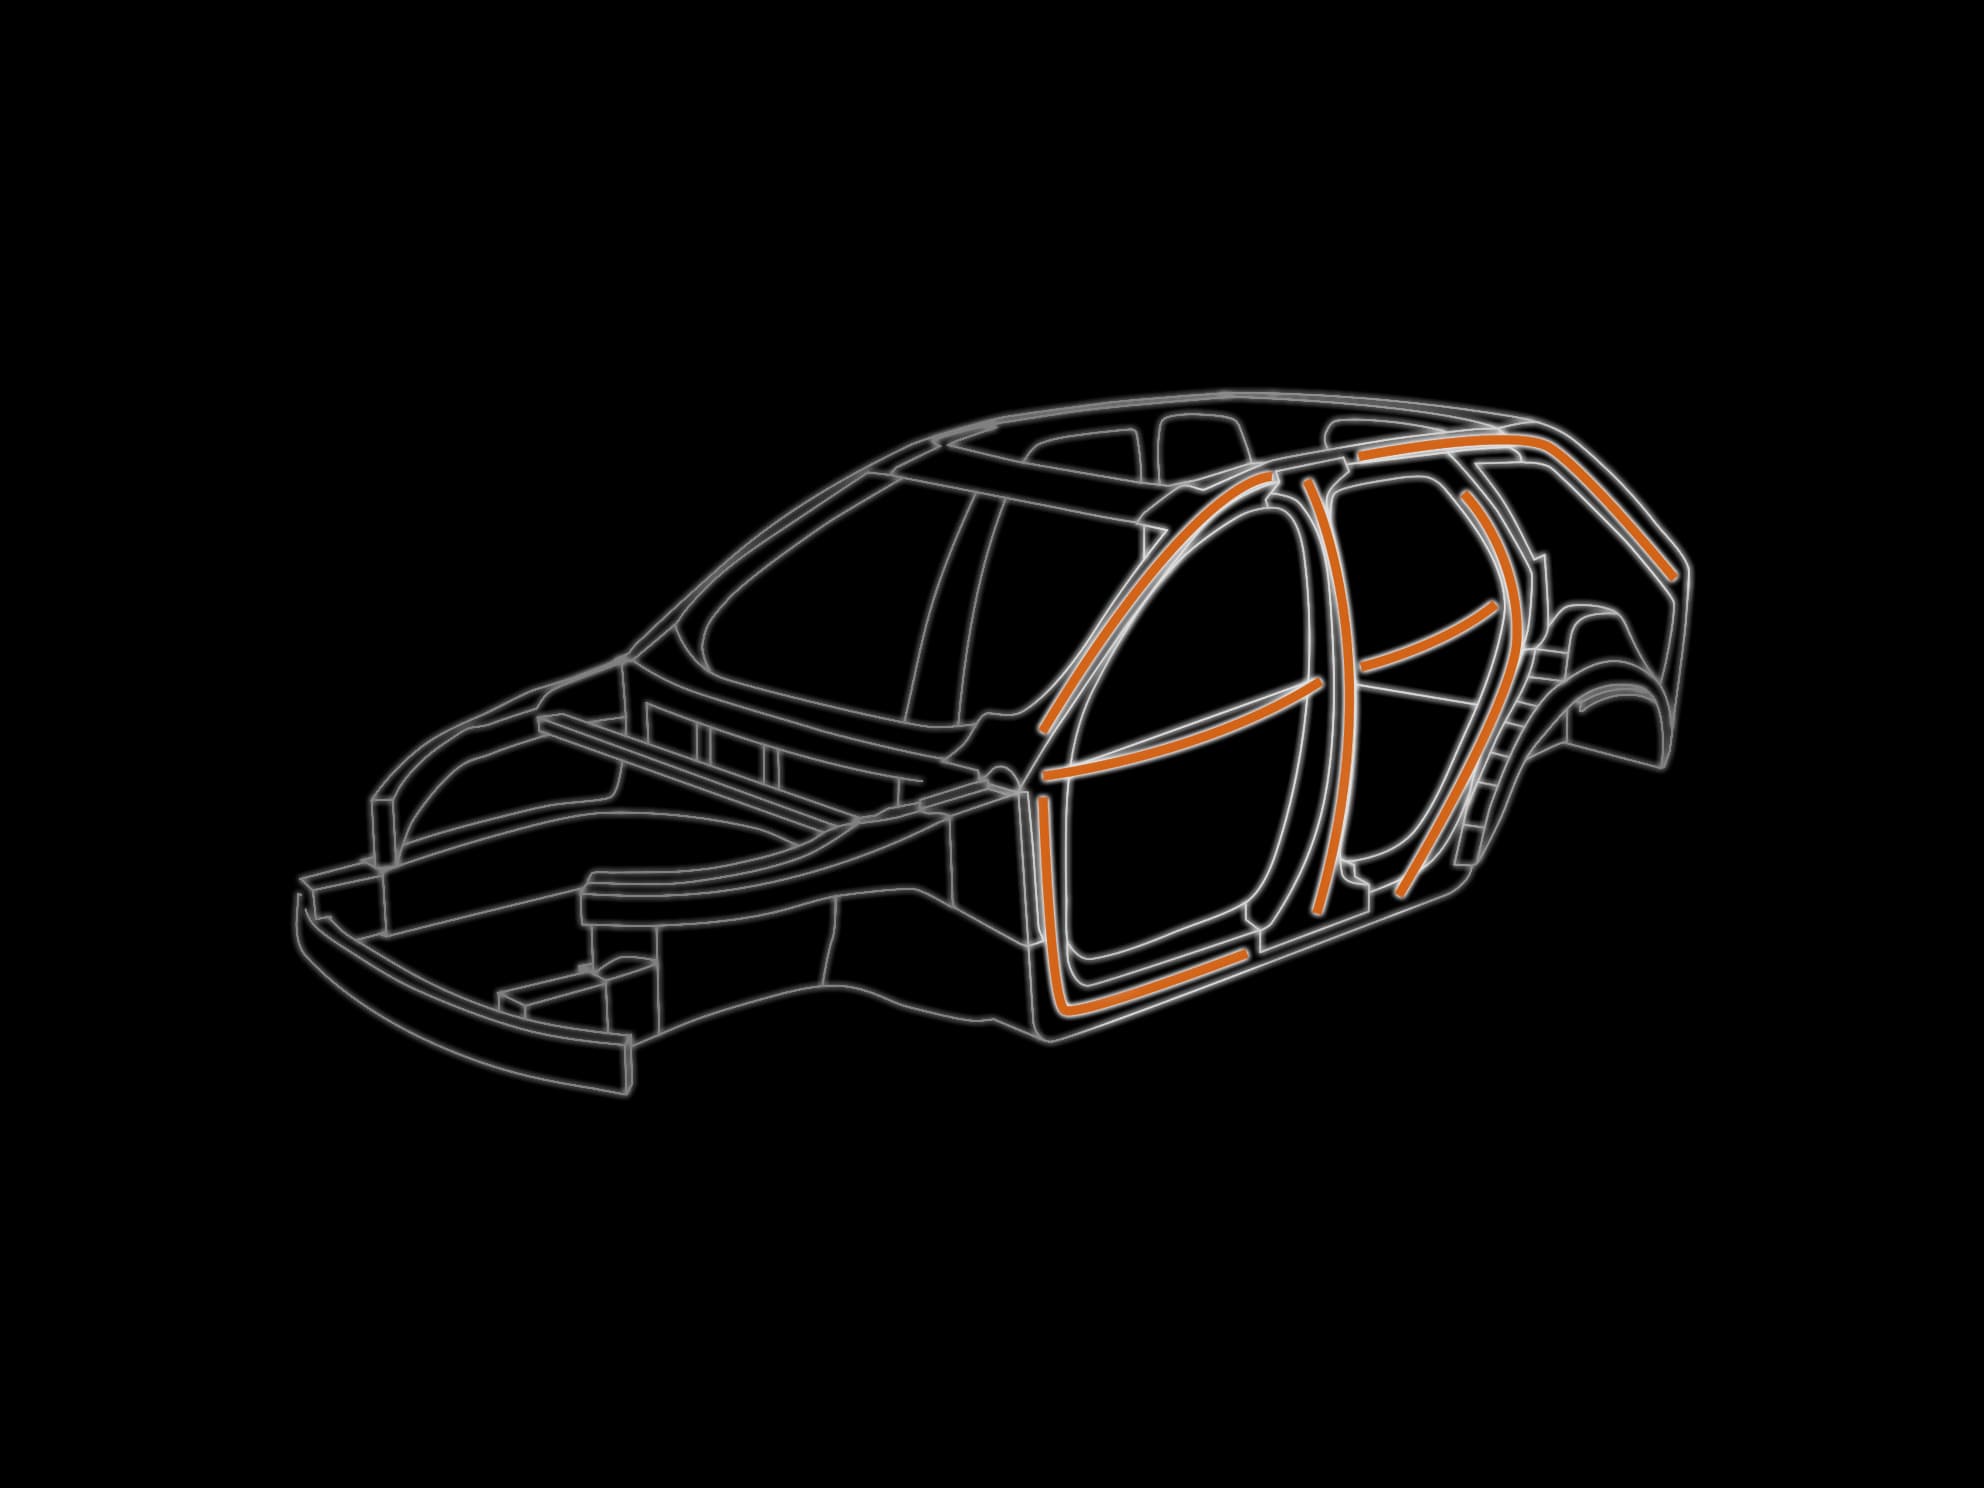 Un esquema digital del chasis de un vehículo